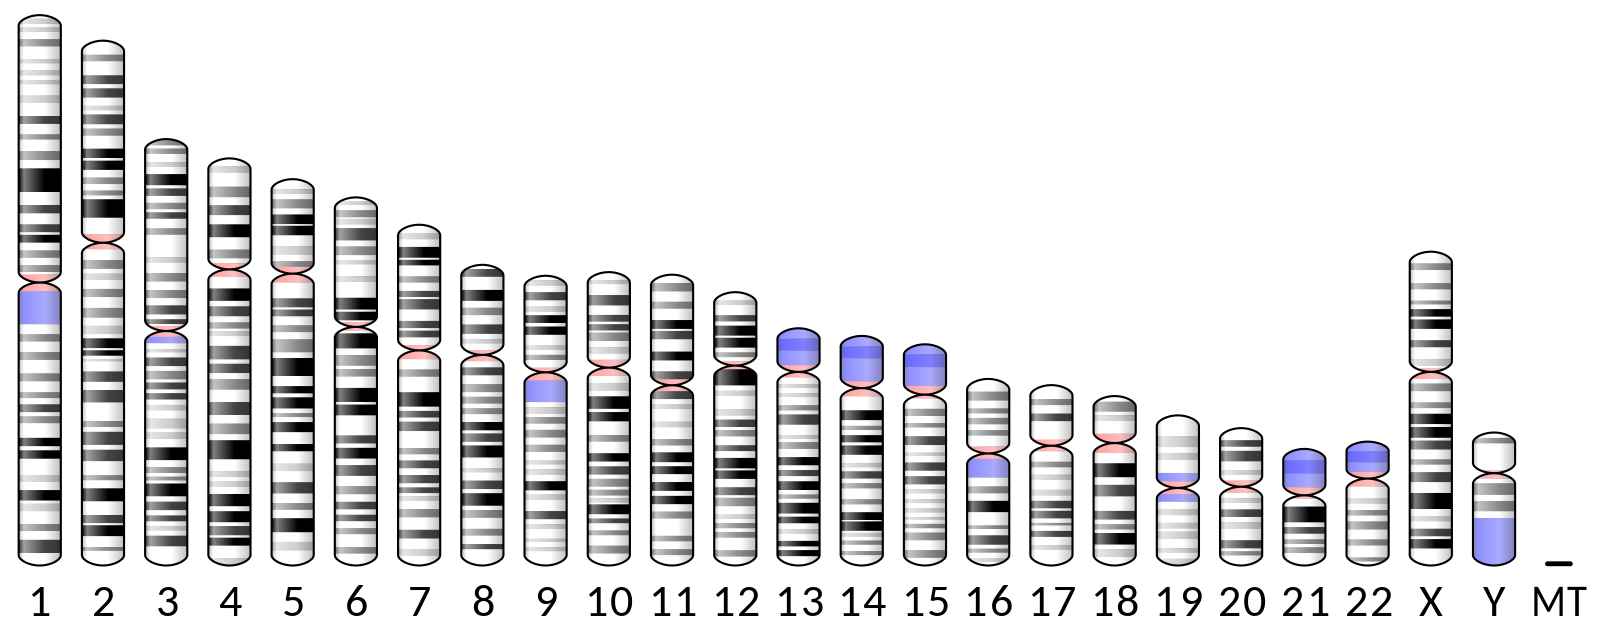 El genoma de los seres humanos está repartido en 23 parejas de cromosomas, de las cuales el último par puede estar conformado por dos cromosomas sexuales X o por un cromosoma X y otro Y. El resto, pese a ser cromosomas comunes a hombres y mujeres, también contienen genes necesarios para el desarrollo gonadal, pero son activados por genes específicos del cromosoma Y o por su ausencia.